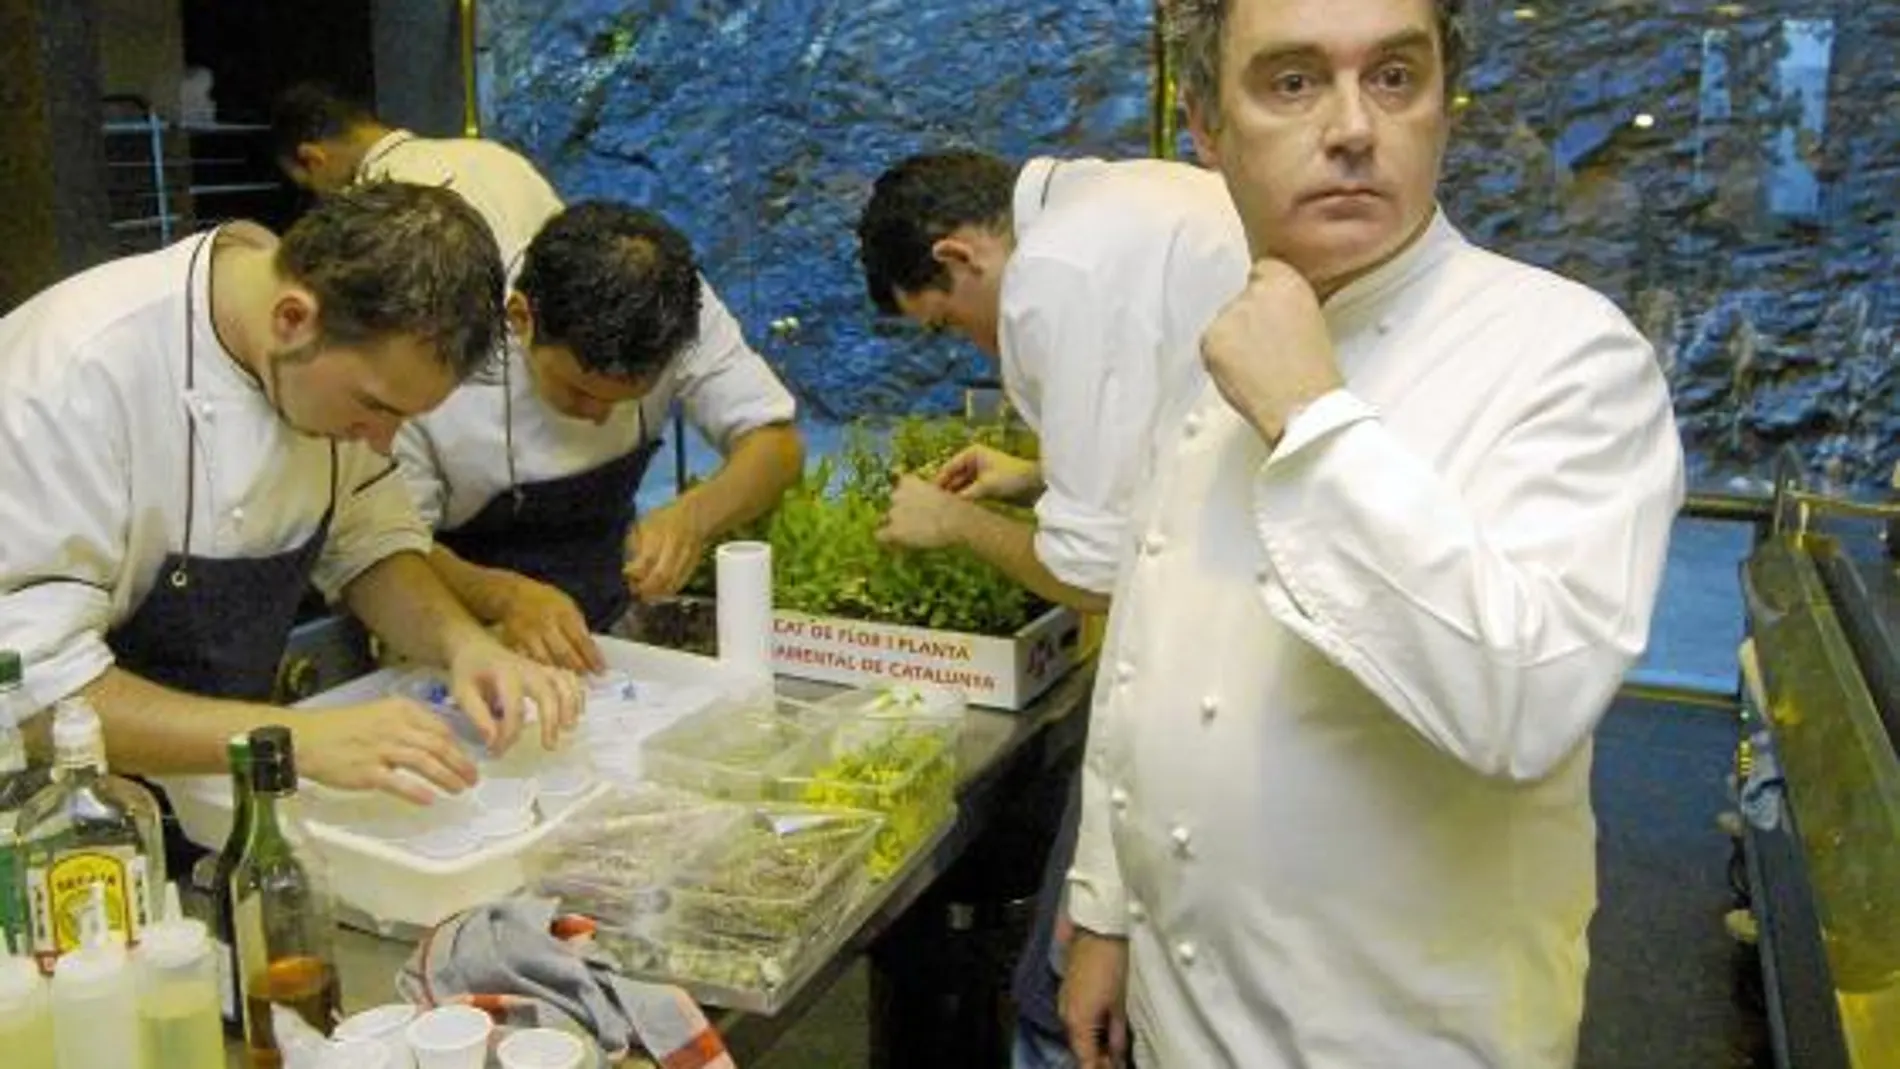 El Bulli de Ferran Adrià se ha convertido en uno de los hitos de la ciencia en la cocina